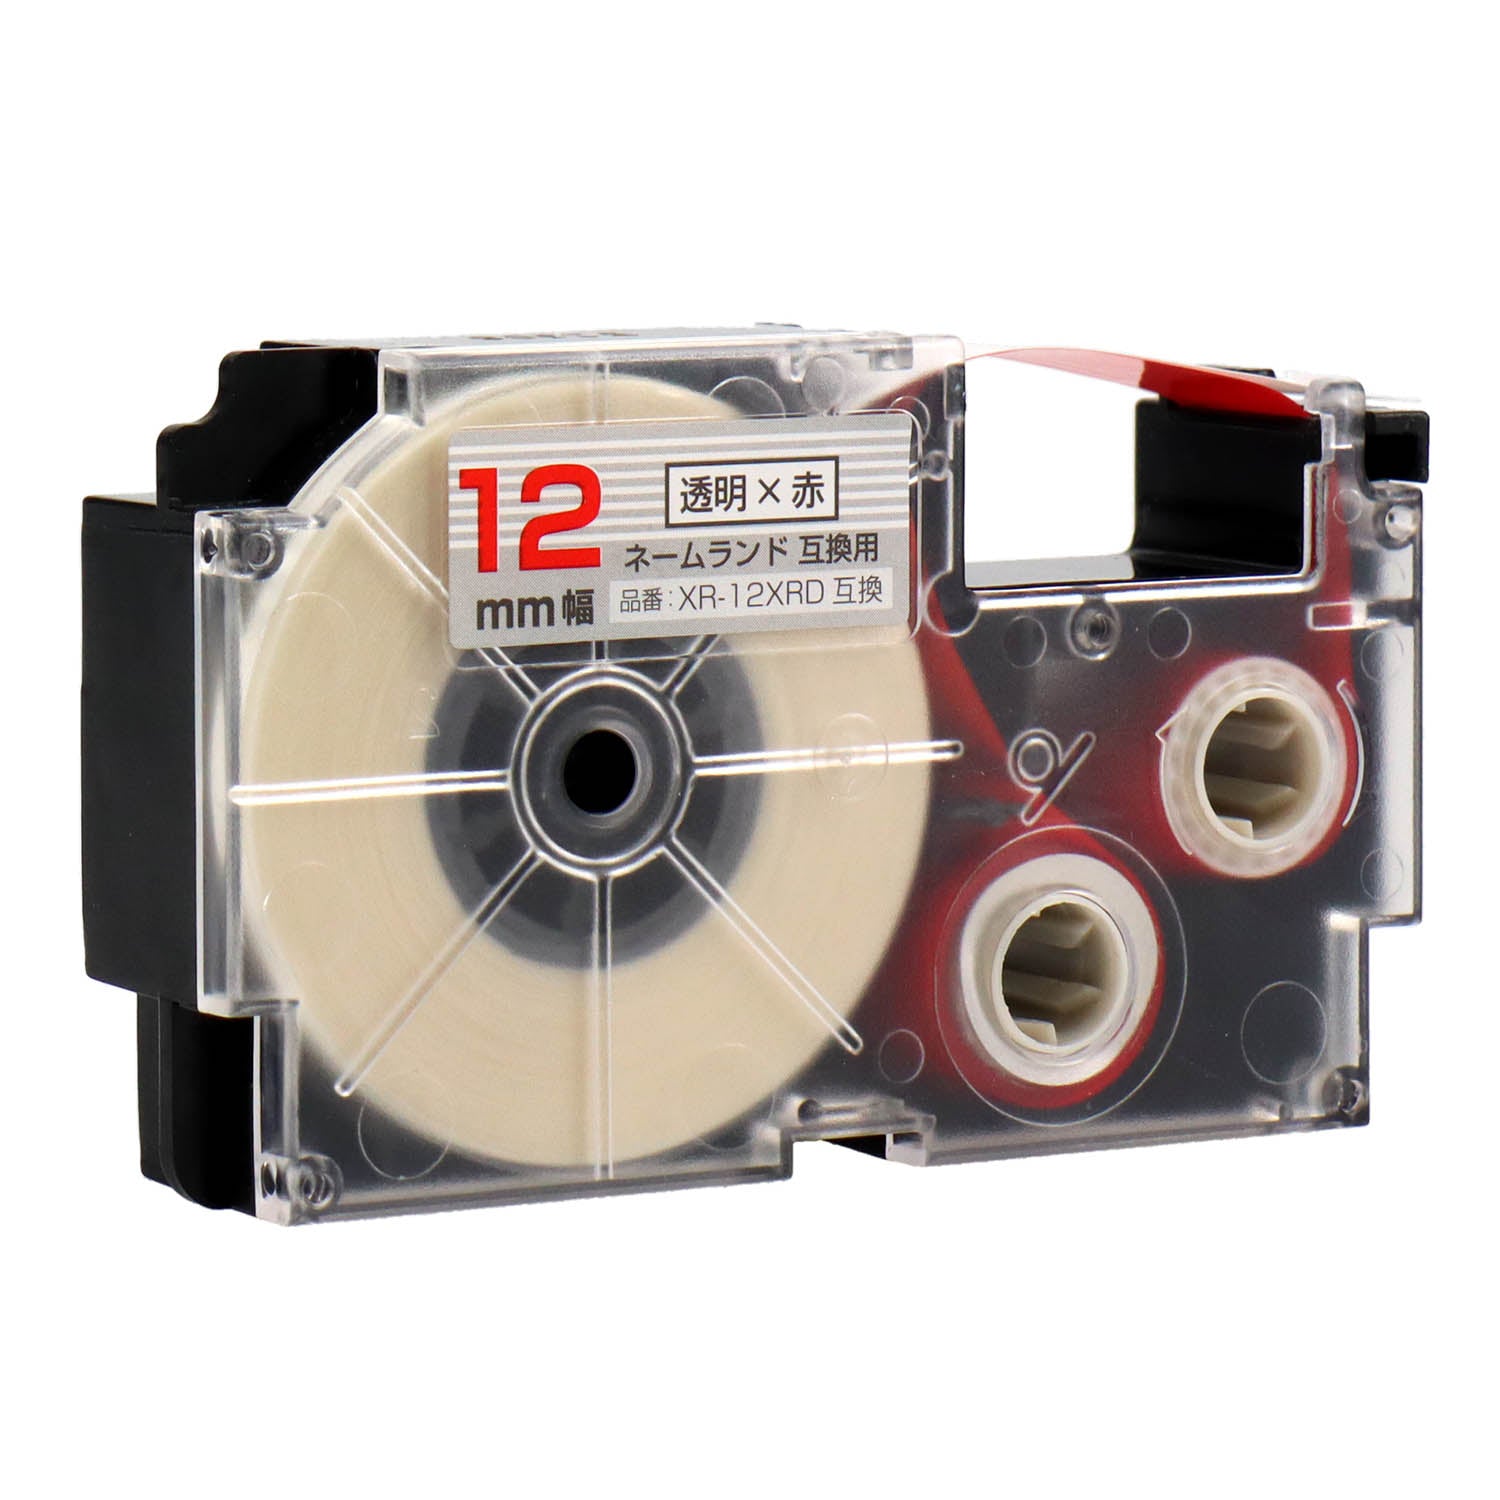 ネームランド用互換テープカートリッジ 透明×赤文字 12mm